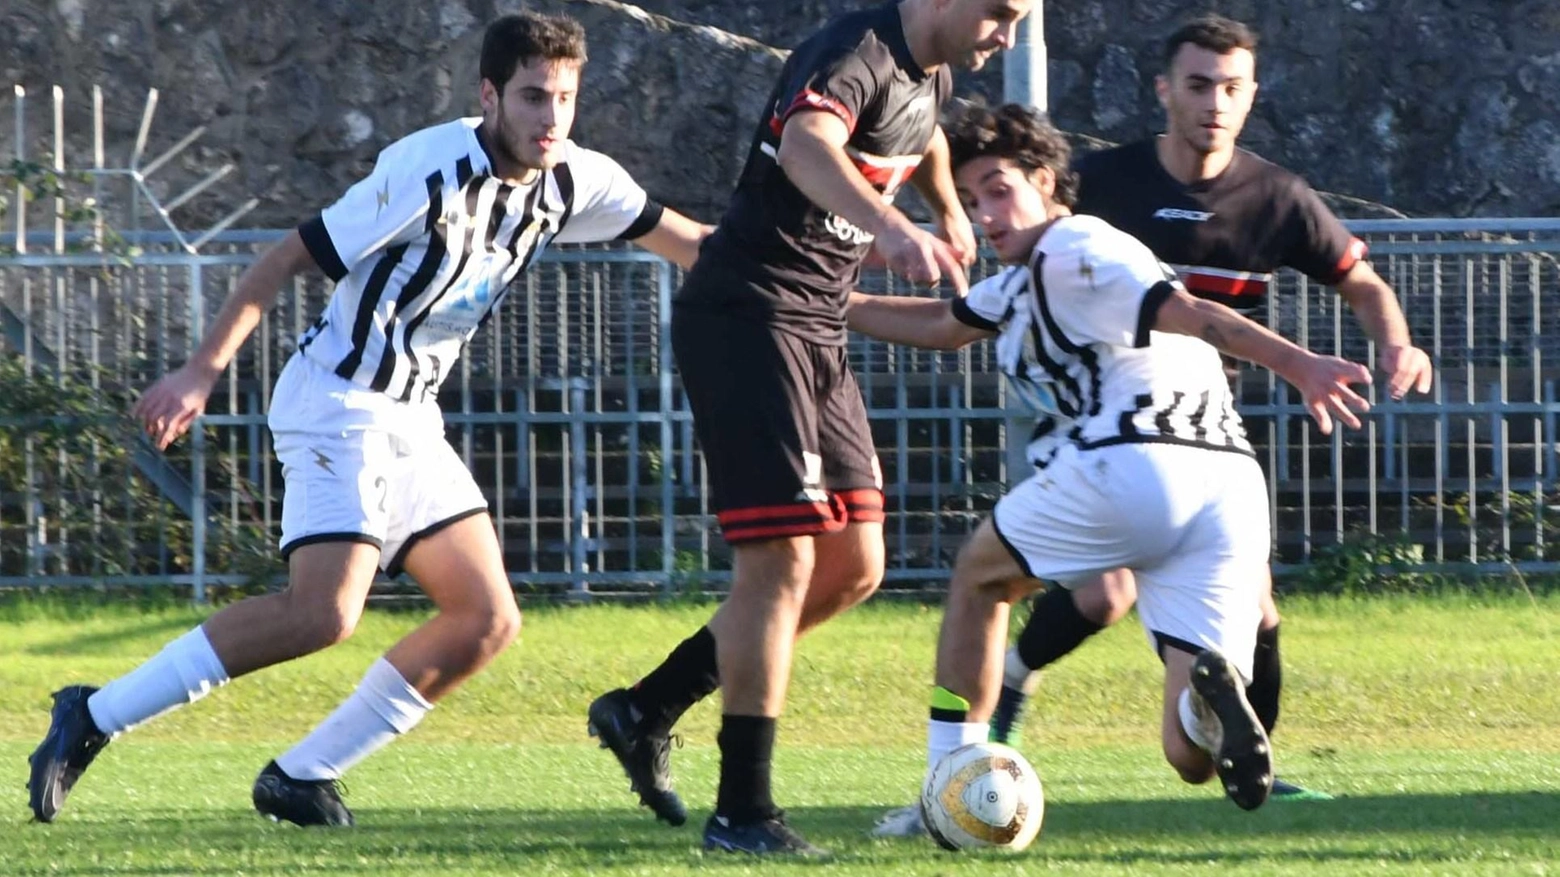 La Cuoiopelli pareggia 0-0 contro il Castelfiorentino, non riuscendo a sfruttare la situazione di difficoltà dell'avversario. La squadra resta seconda in classifica.